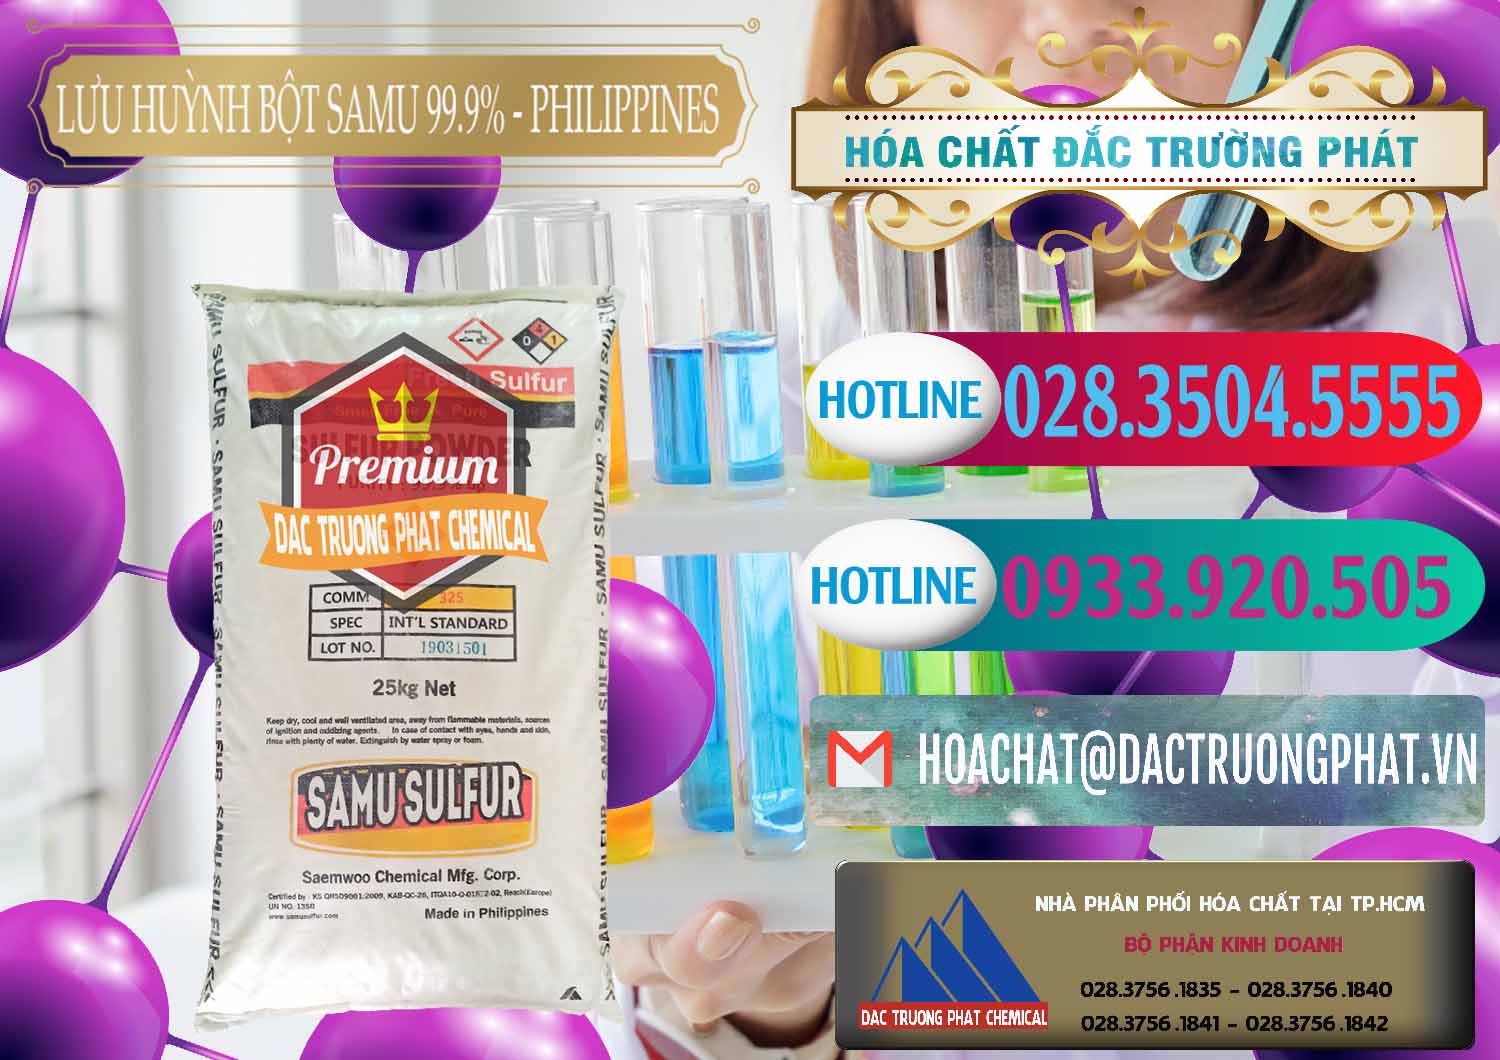 Đơn vị chuyên bán - cung cấp Lưu huỳnh Bột - Sulfur Powder Samu Philippines - 0201 - Nhà nhập khẩu _ cung cấp hóa chất tại TP.HCM - truongphat.vn